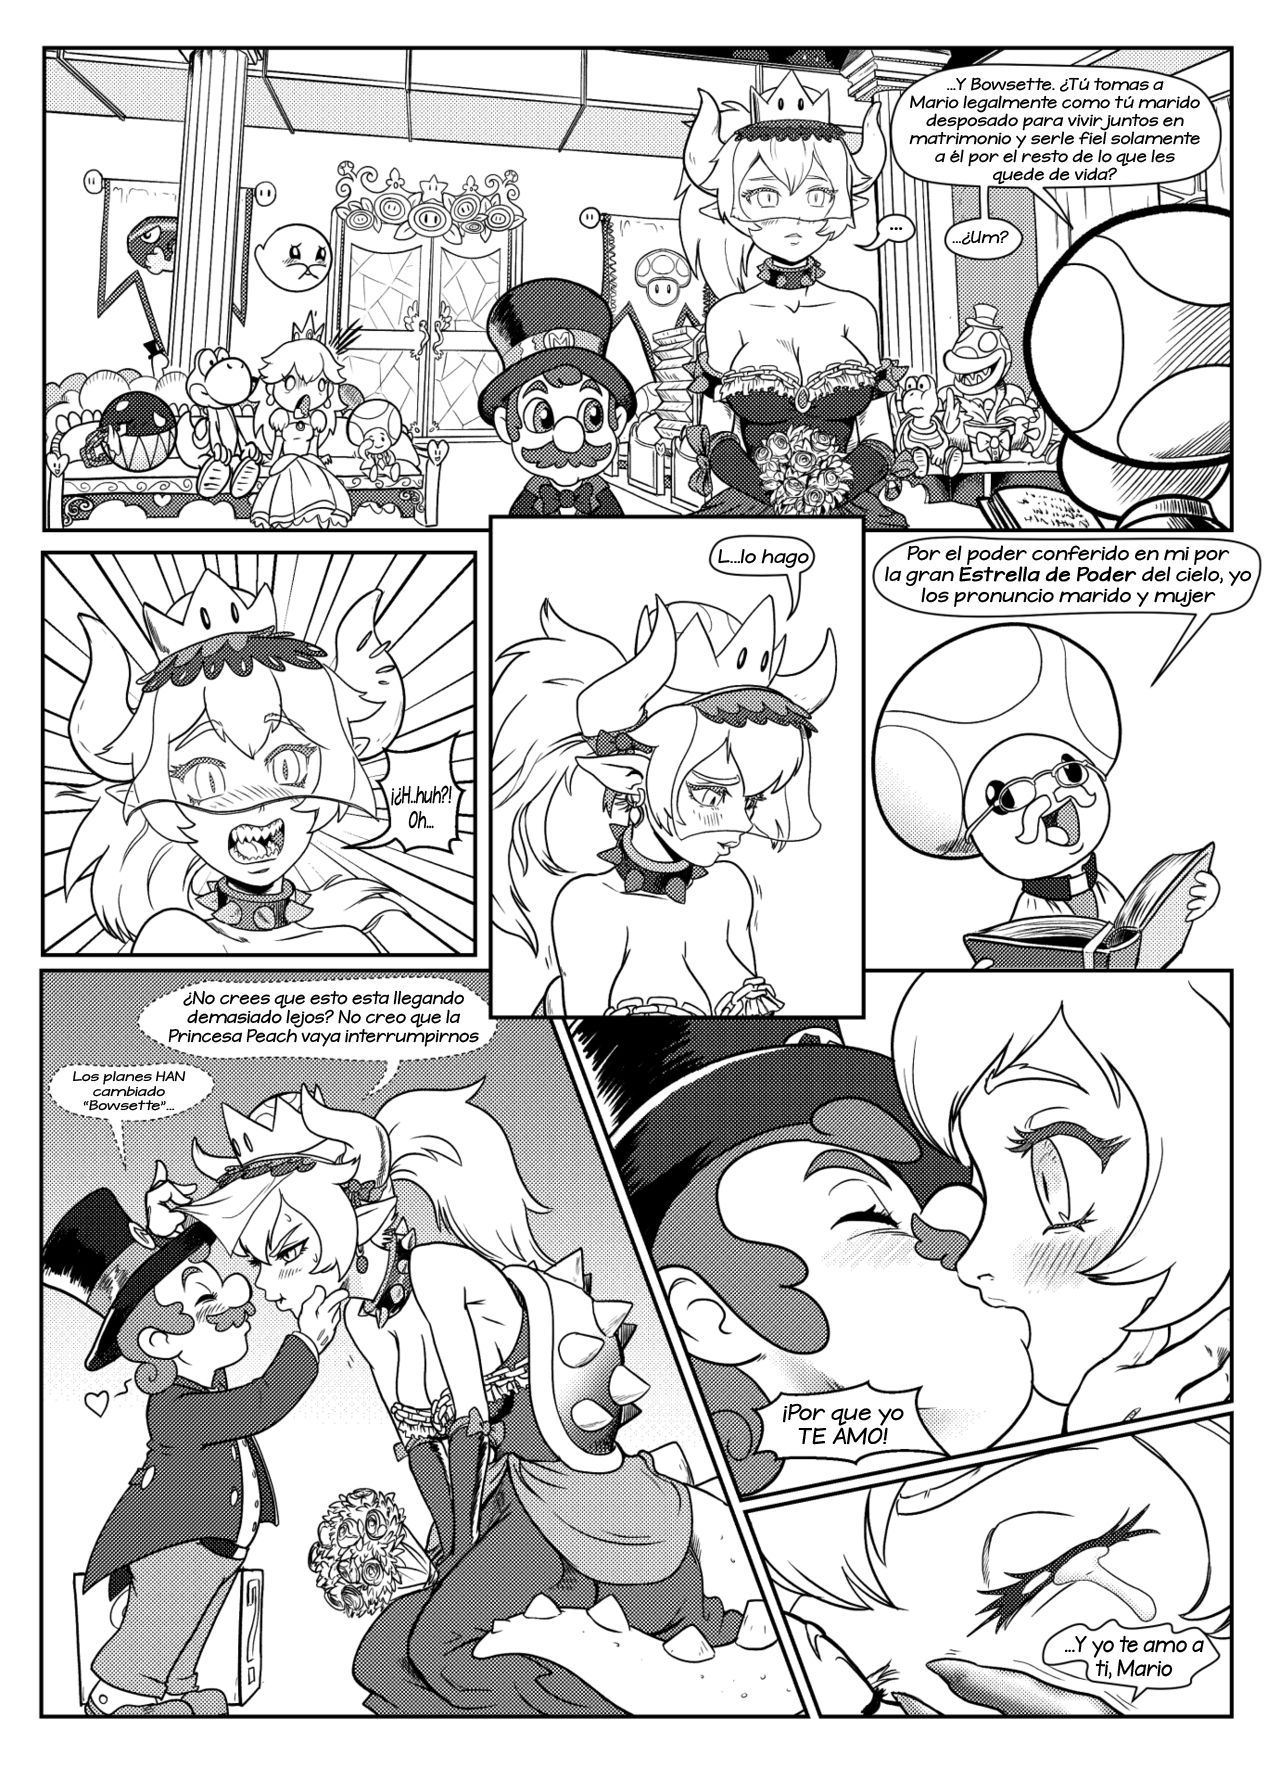 [Pencils] Bowsette Saga Vol.1 Y Vol.2 Completos - Vol.3 En Progreso (Mario Bros.) [Spanish] by Arkoniusx 3